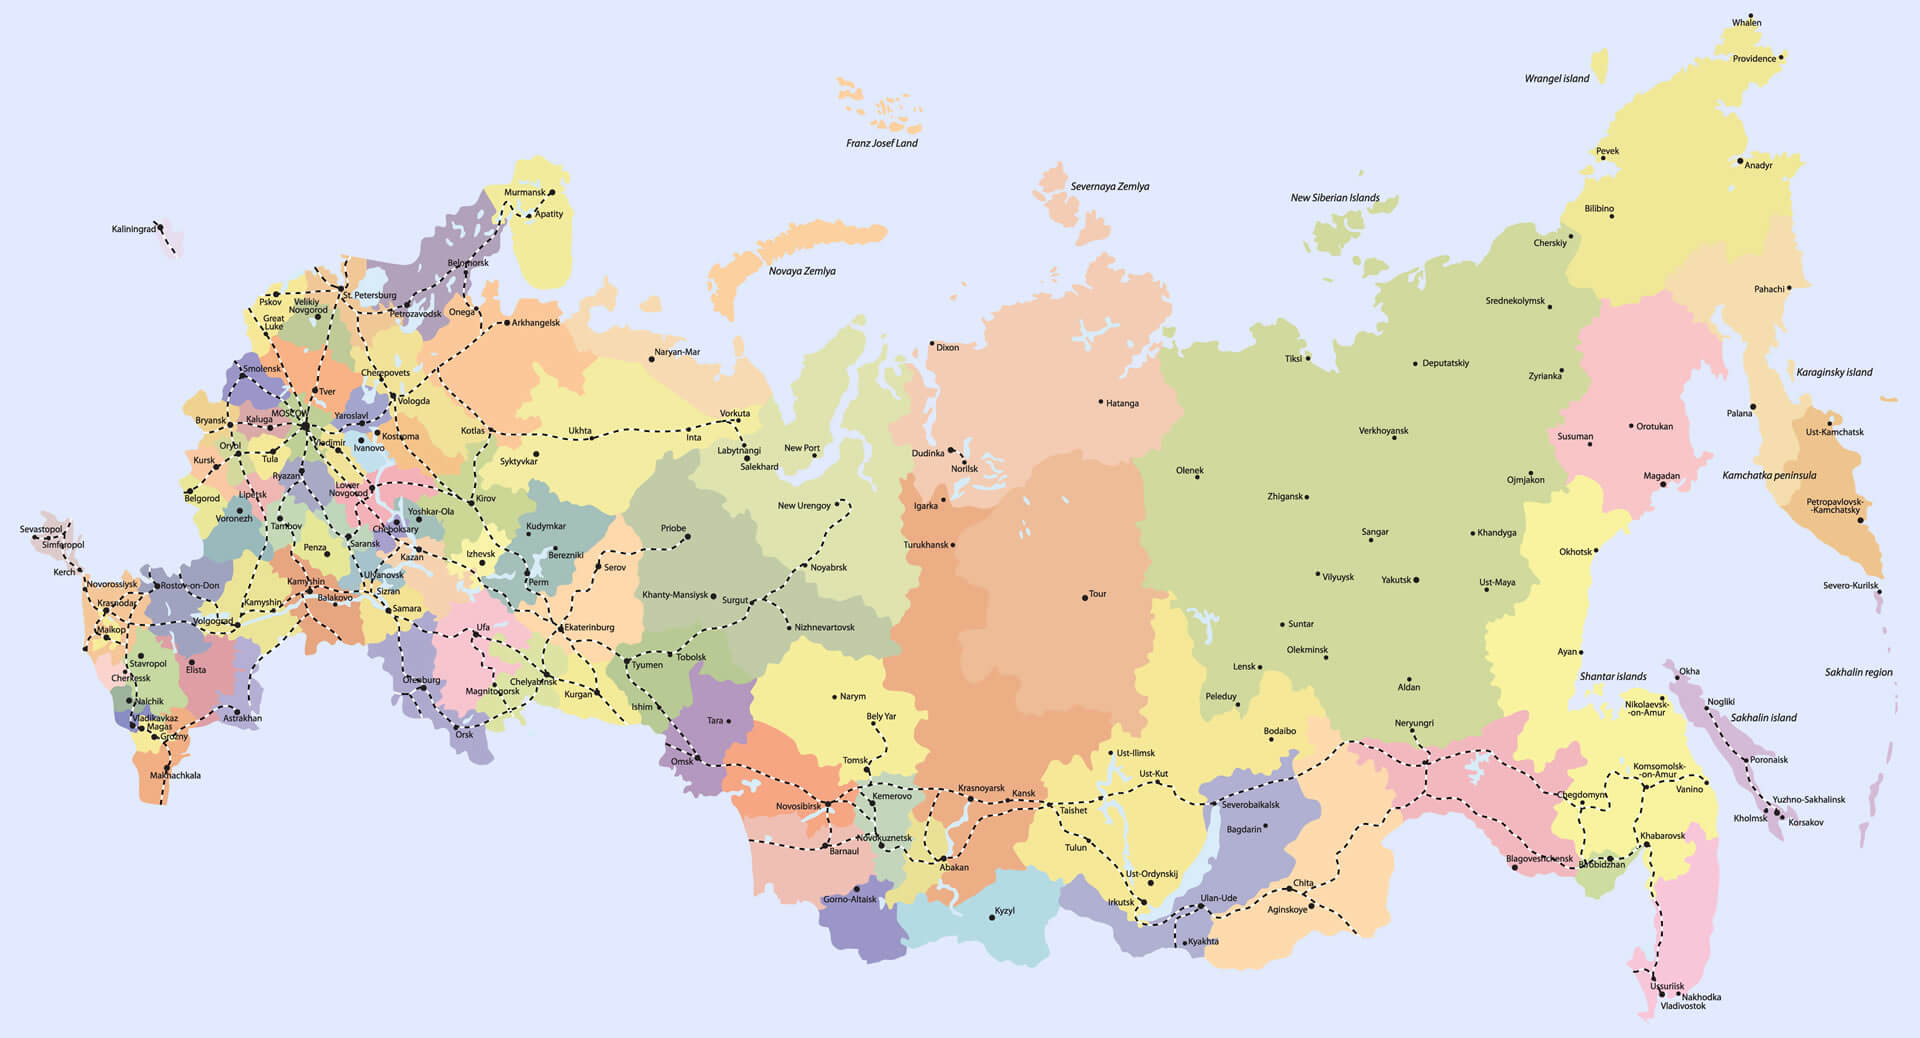 Detaillierte Karte von Russland mit Städten und Regionen